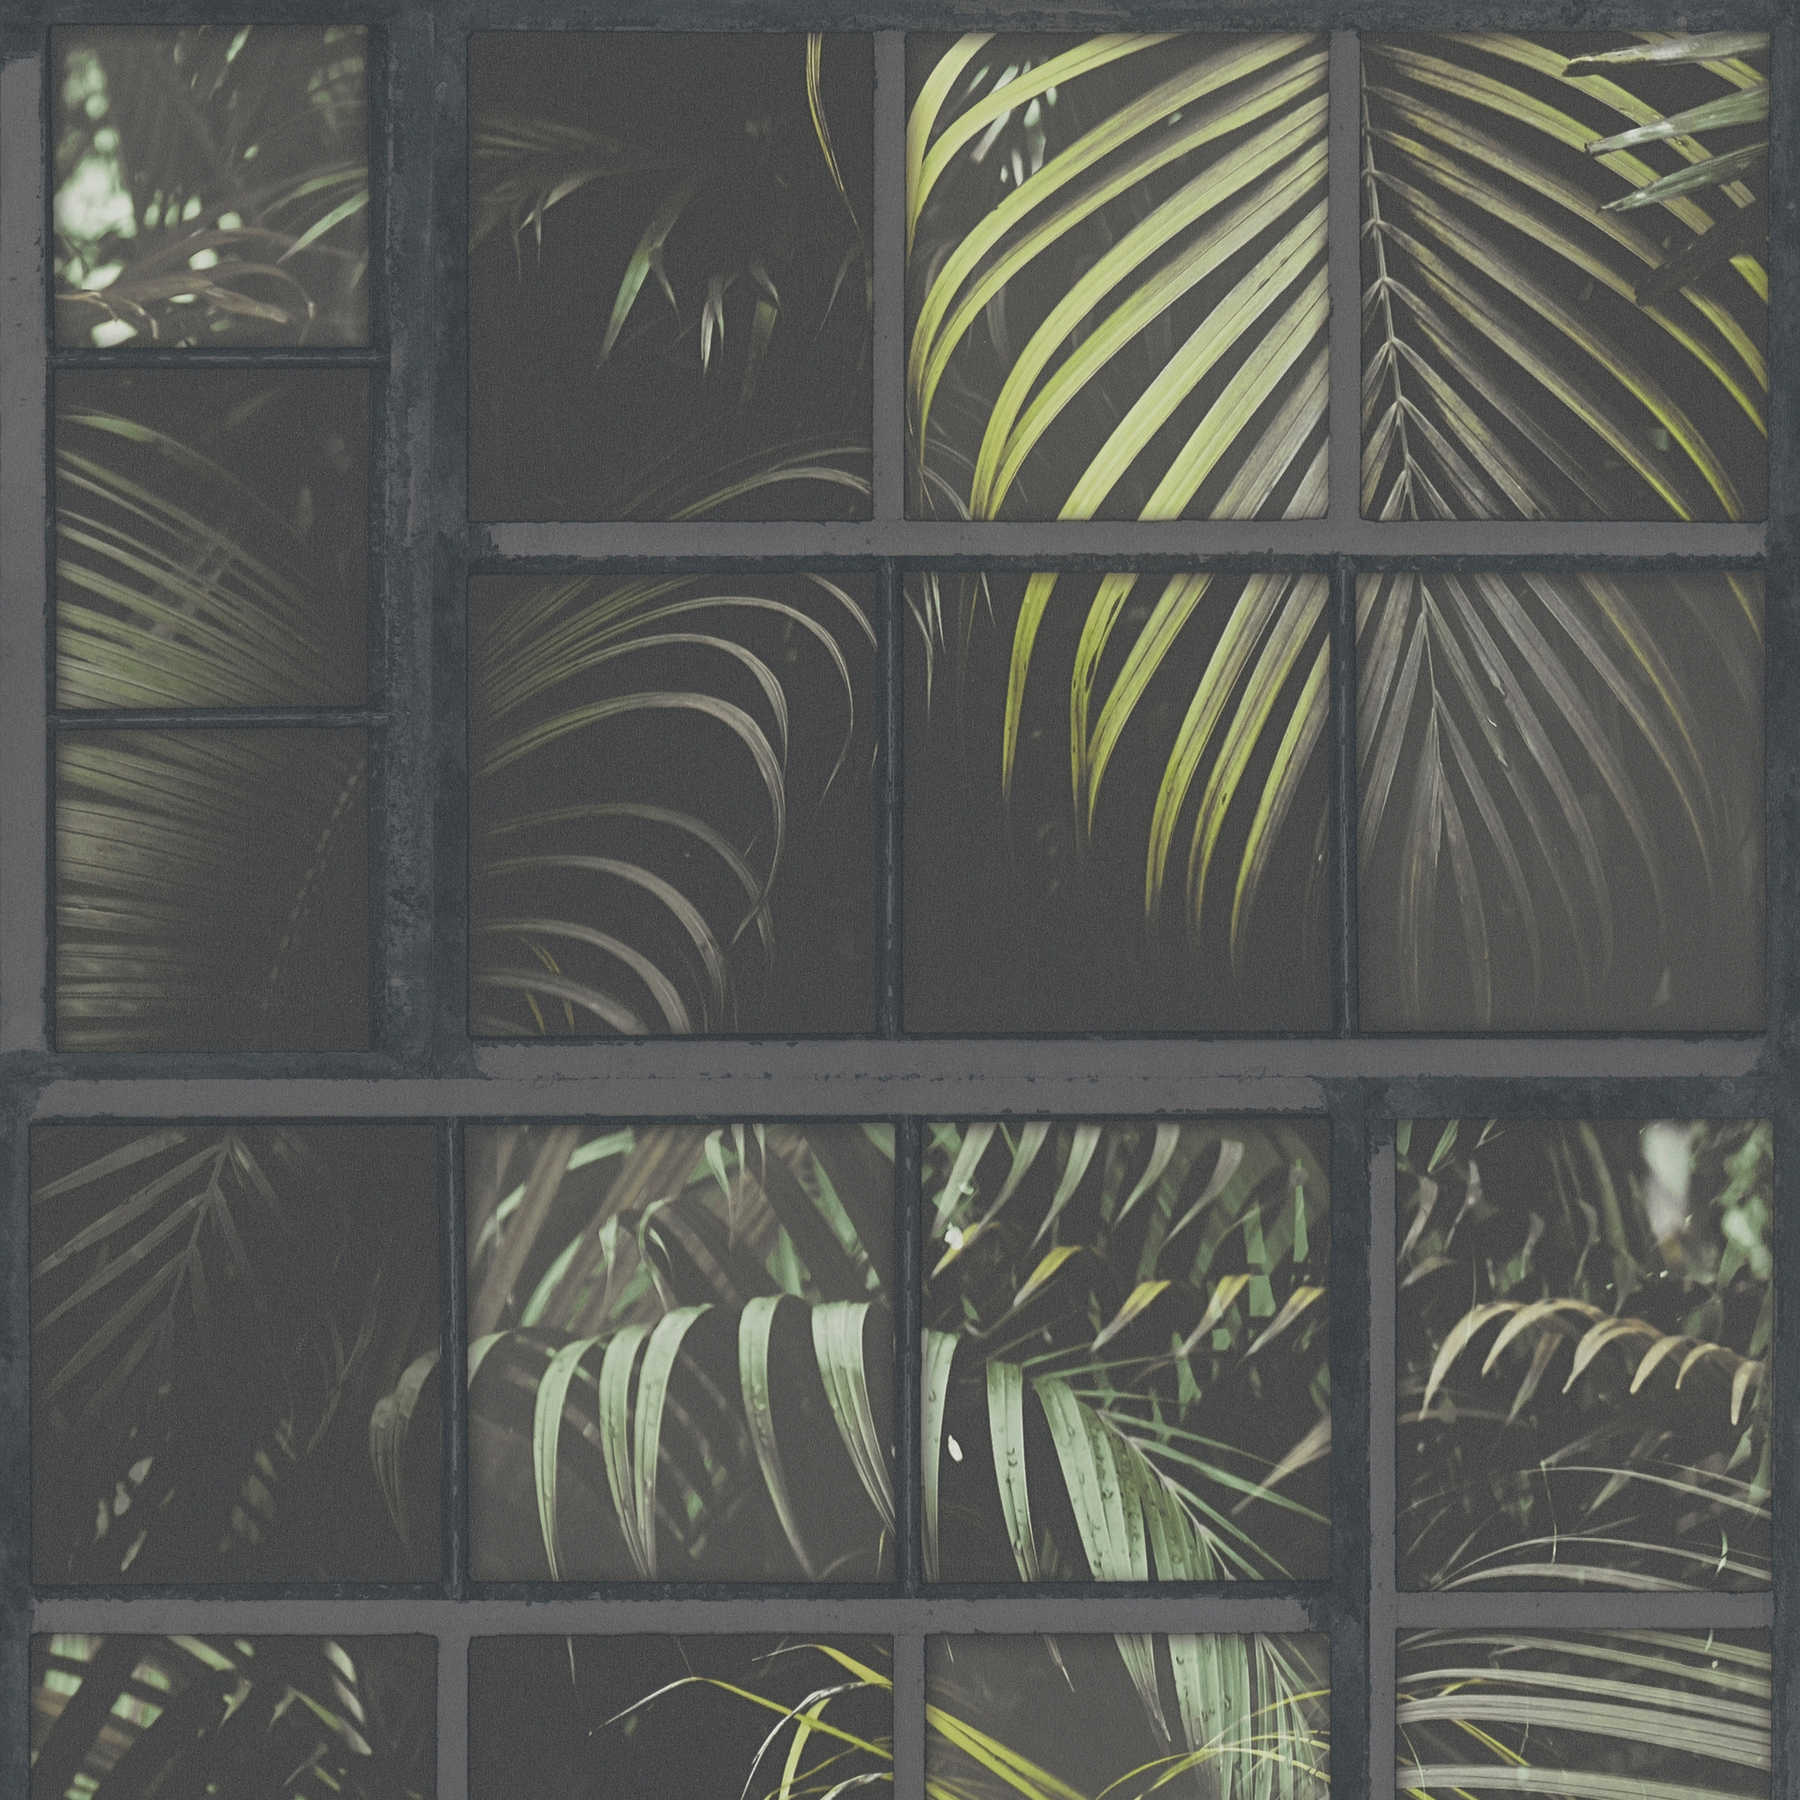         Wallpaper windows jungle view, 3D effect - grey, green, black
    